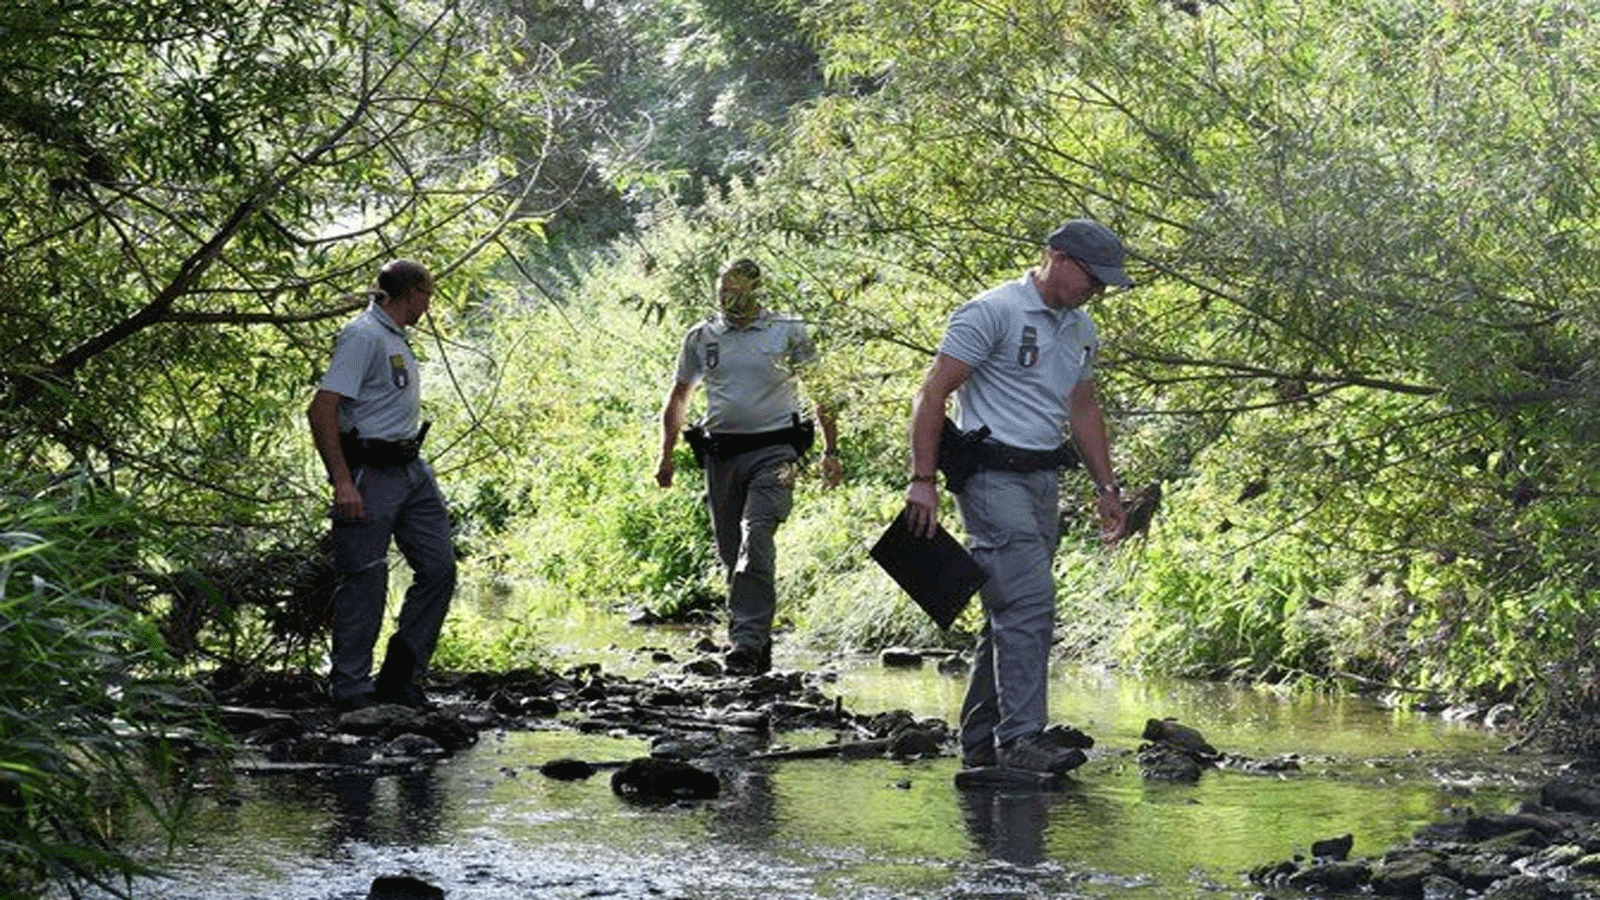 أعضاء المكتب الفرنسي للتنوع البيولوجي يتفقدون منسوب نهر يسير وسط جفاف شديد في البلاد في هرتسيلي شمال فرنسا يوم الثلاثاء 2 آب\أغسطس 2022